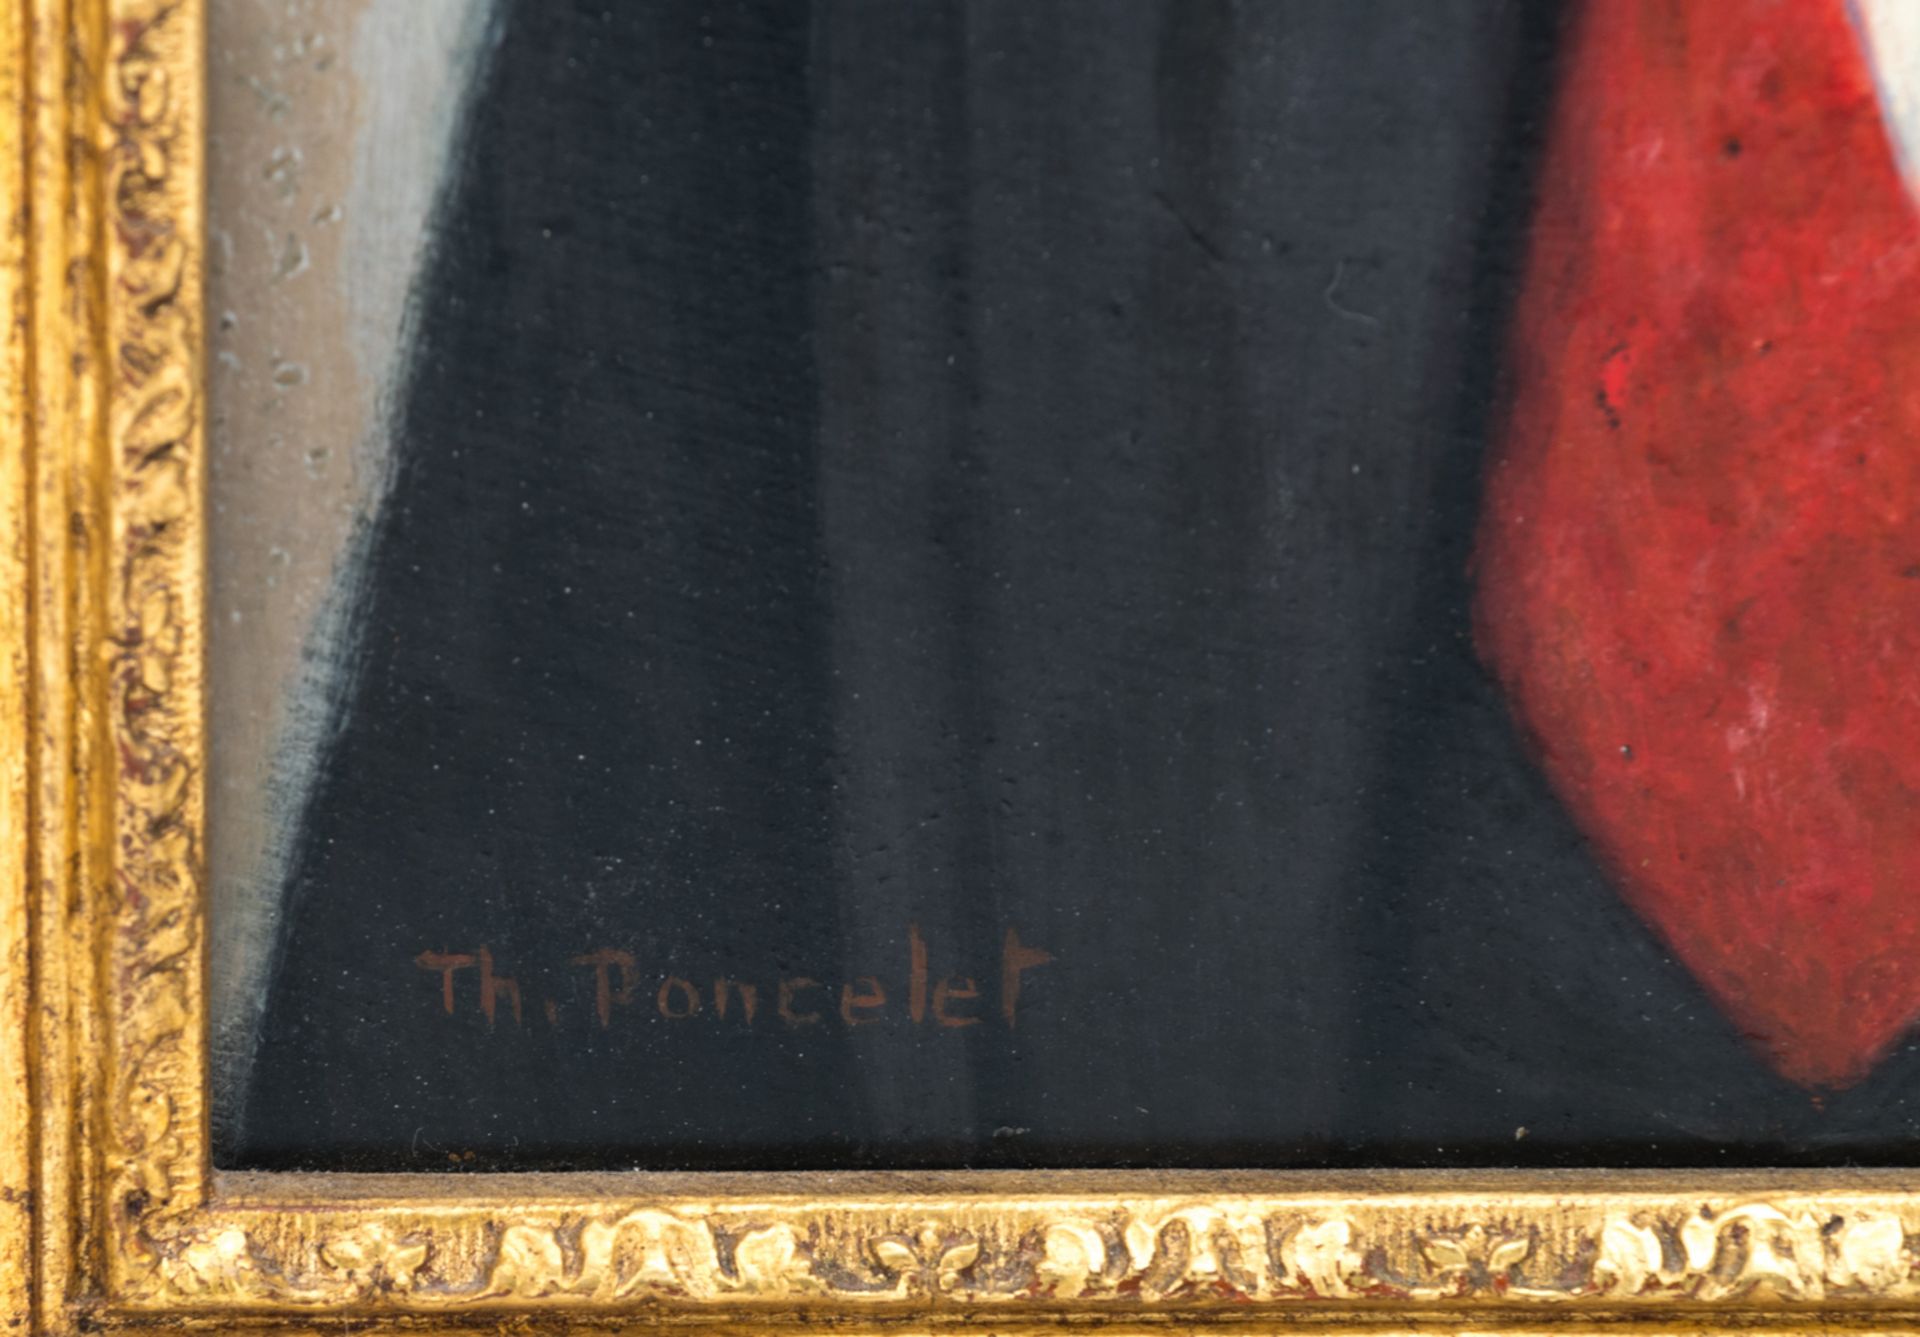 Poncelet Th., 'Portrait', oil on panel, 28 x 40 cm - Bild 4 aus 4